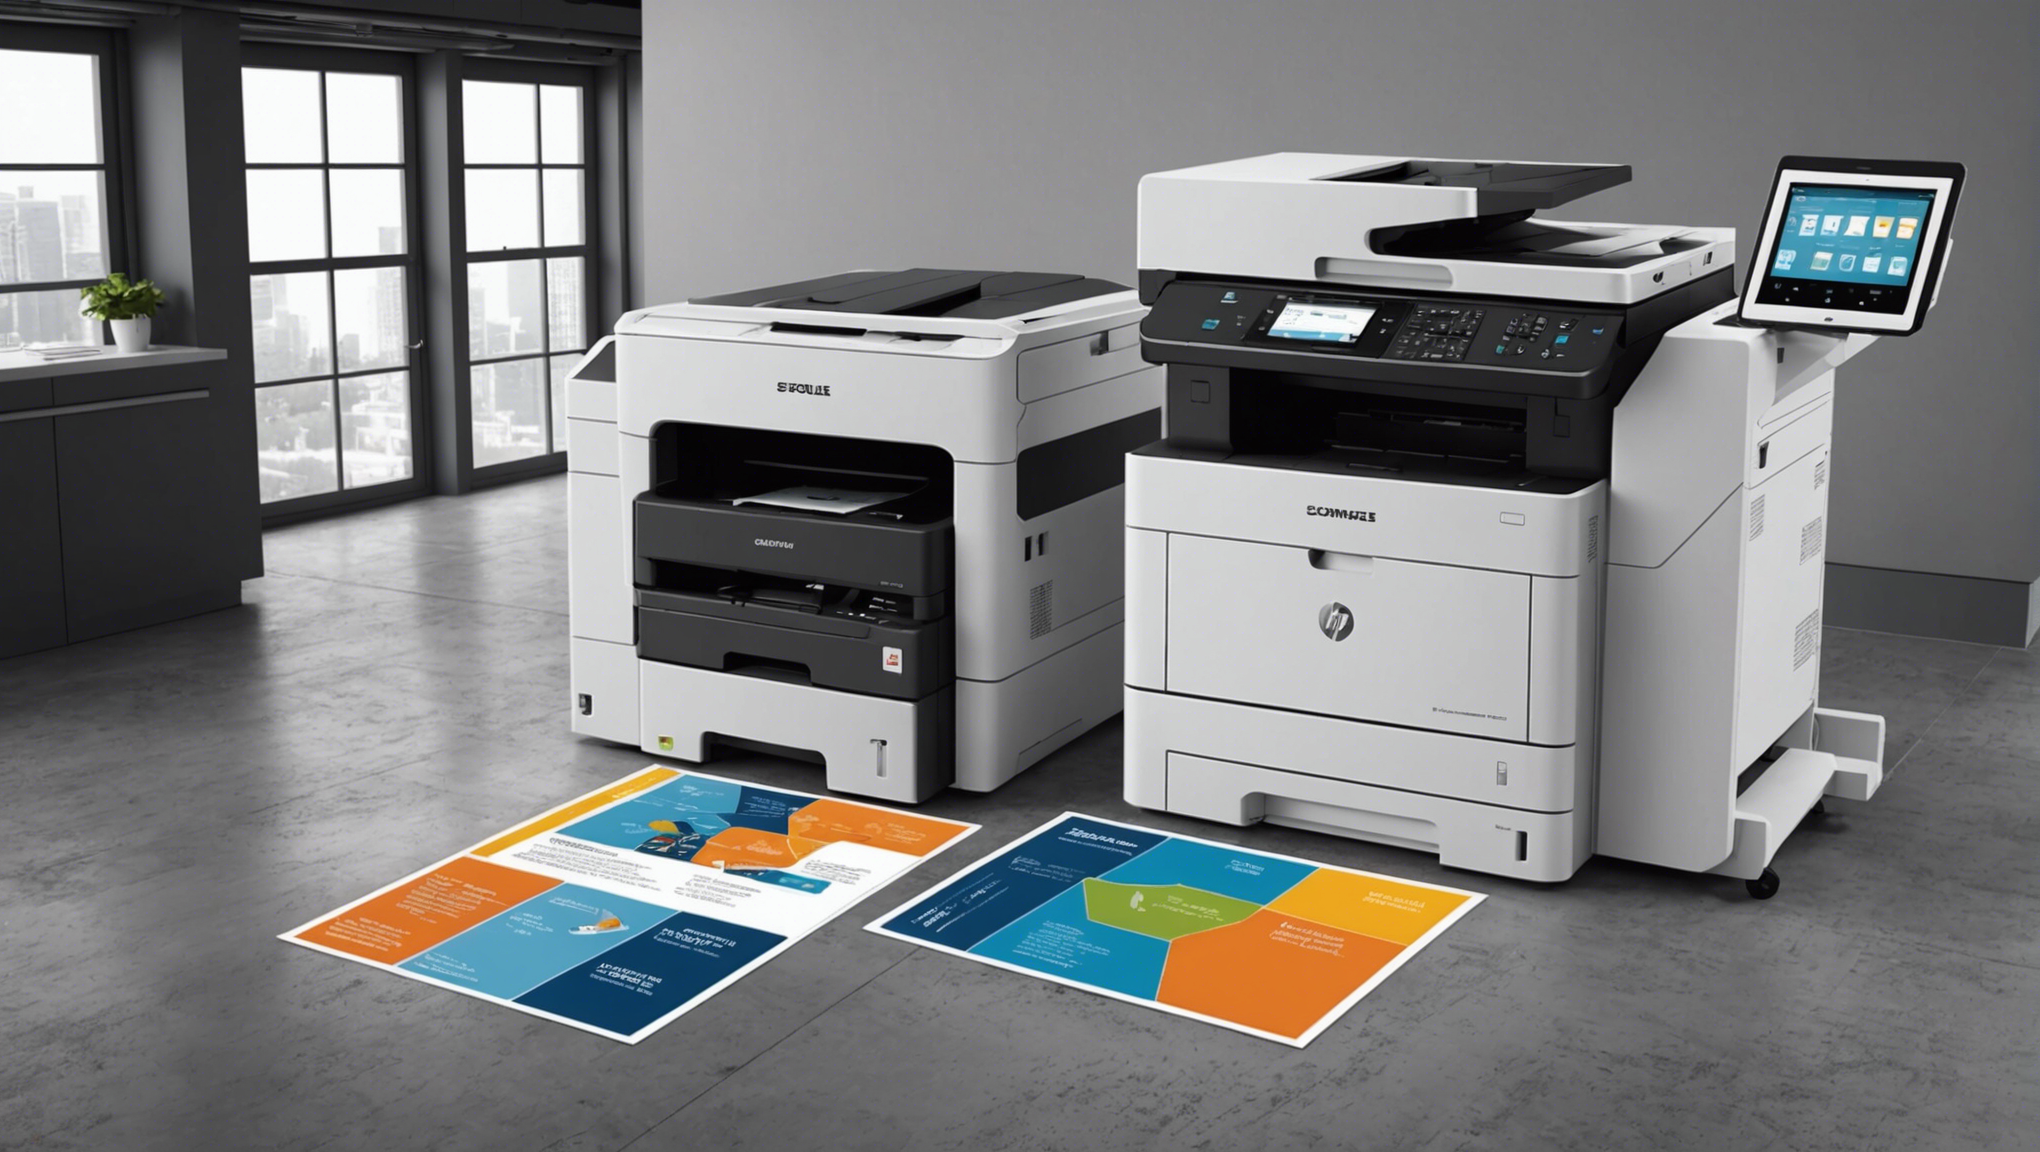 découvrez notre gamme d'imprimantes professionnelles grand format à prix abordables. répondez à tous vos besoins d'impression avec nos imprimantes professionnelles abordables et performantes.